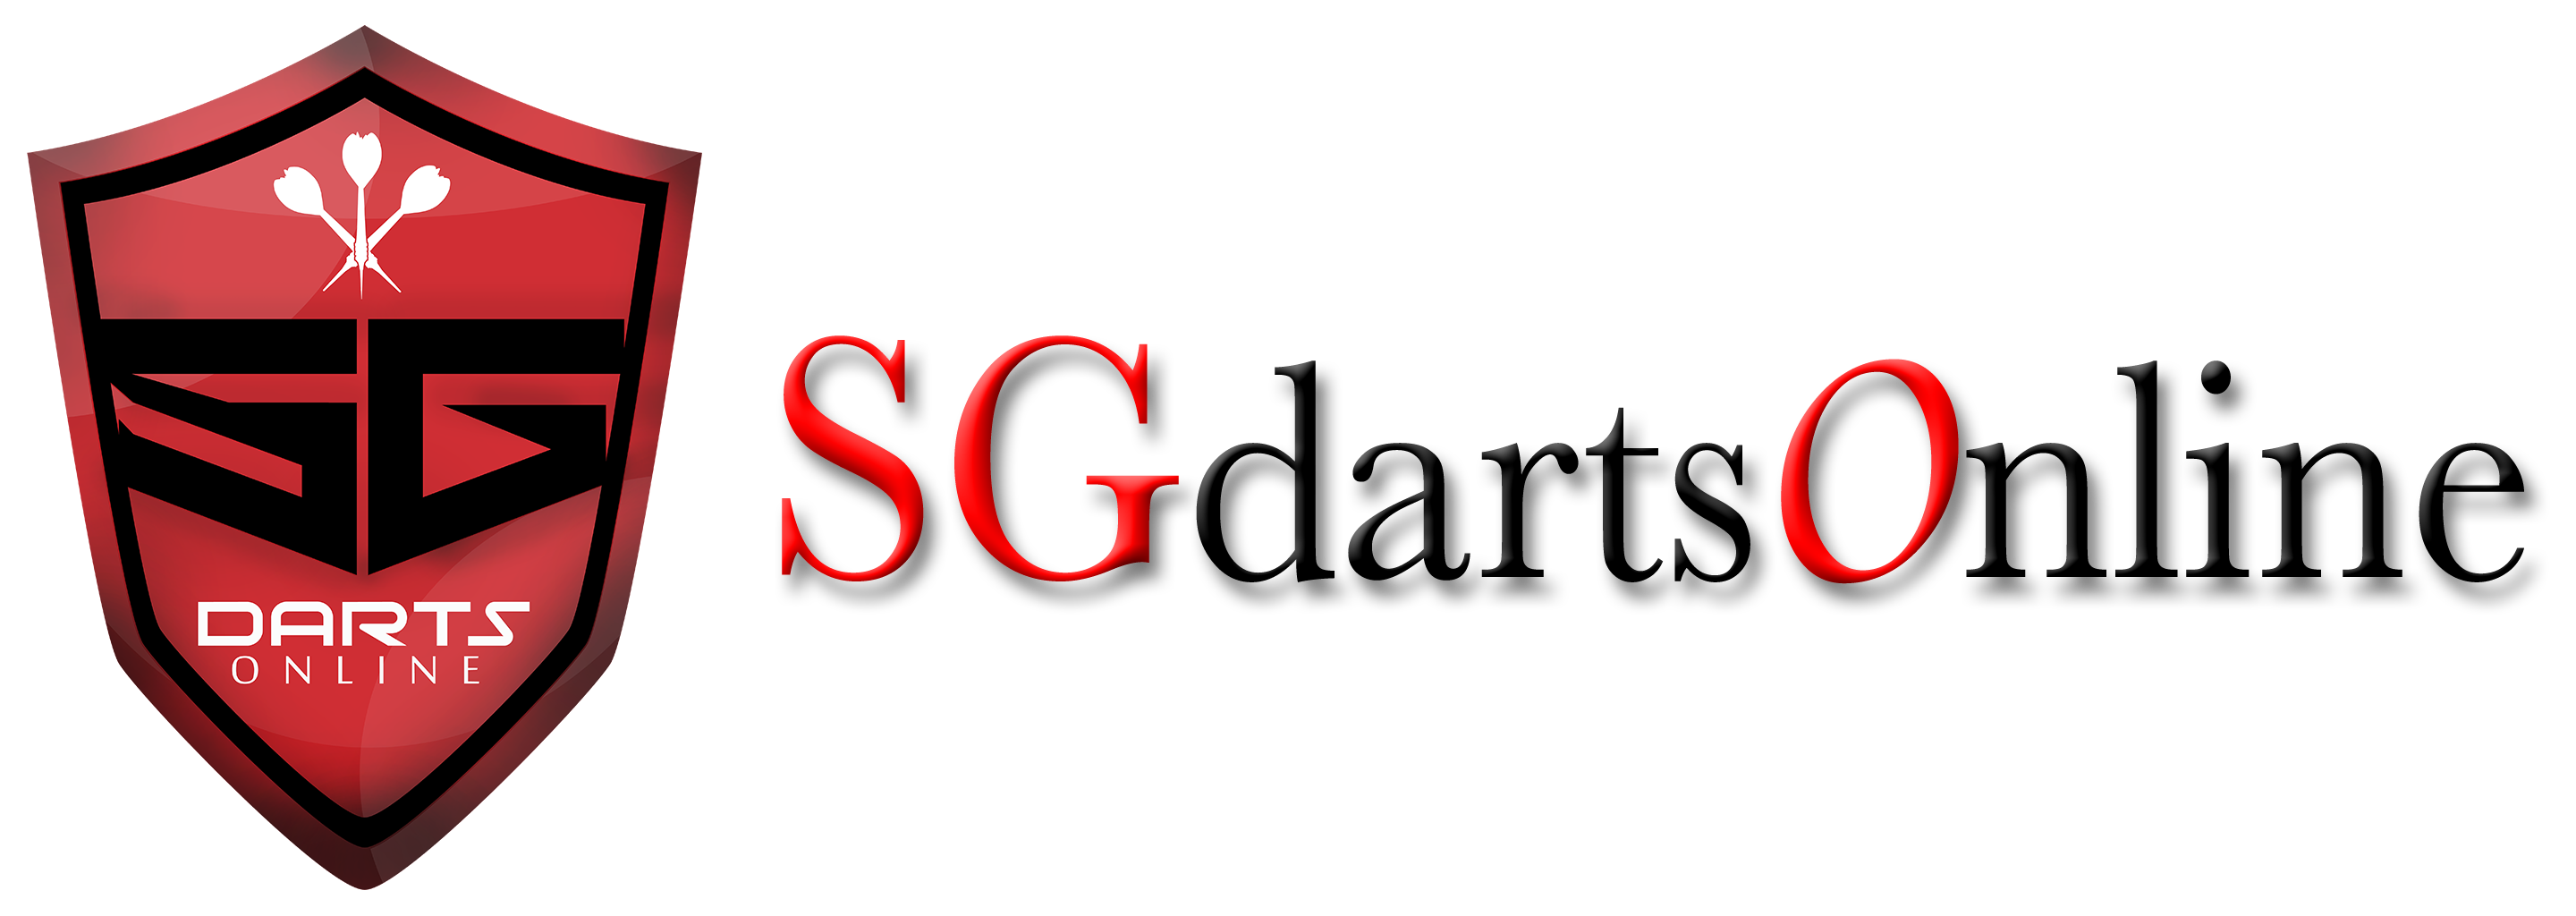 SG Darts Online